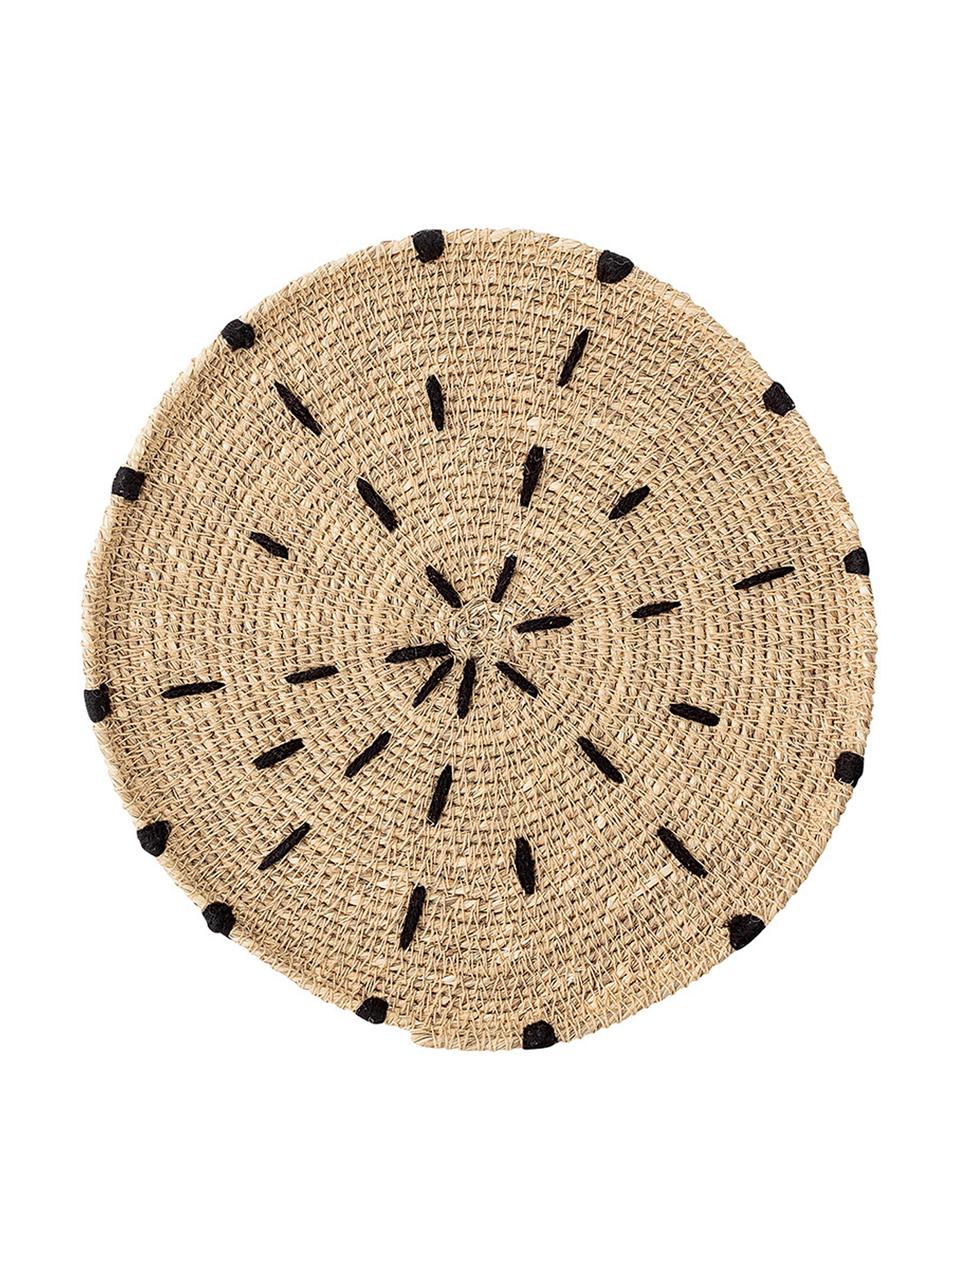 Súprava okrúhleho stolového prestierania z morskej trávy  Deco, 2 diely, Béžová, biela, čierna